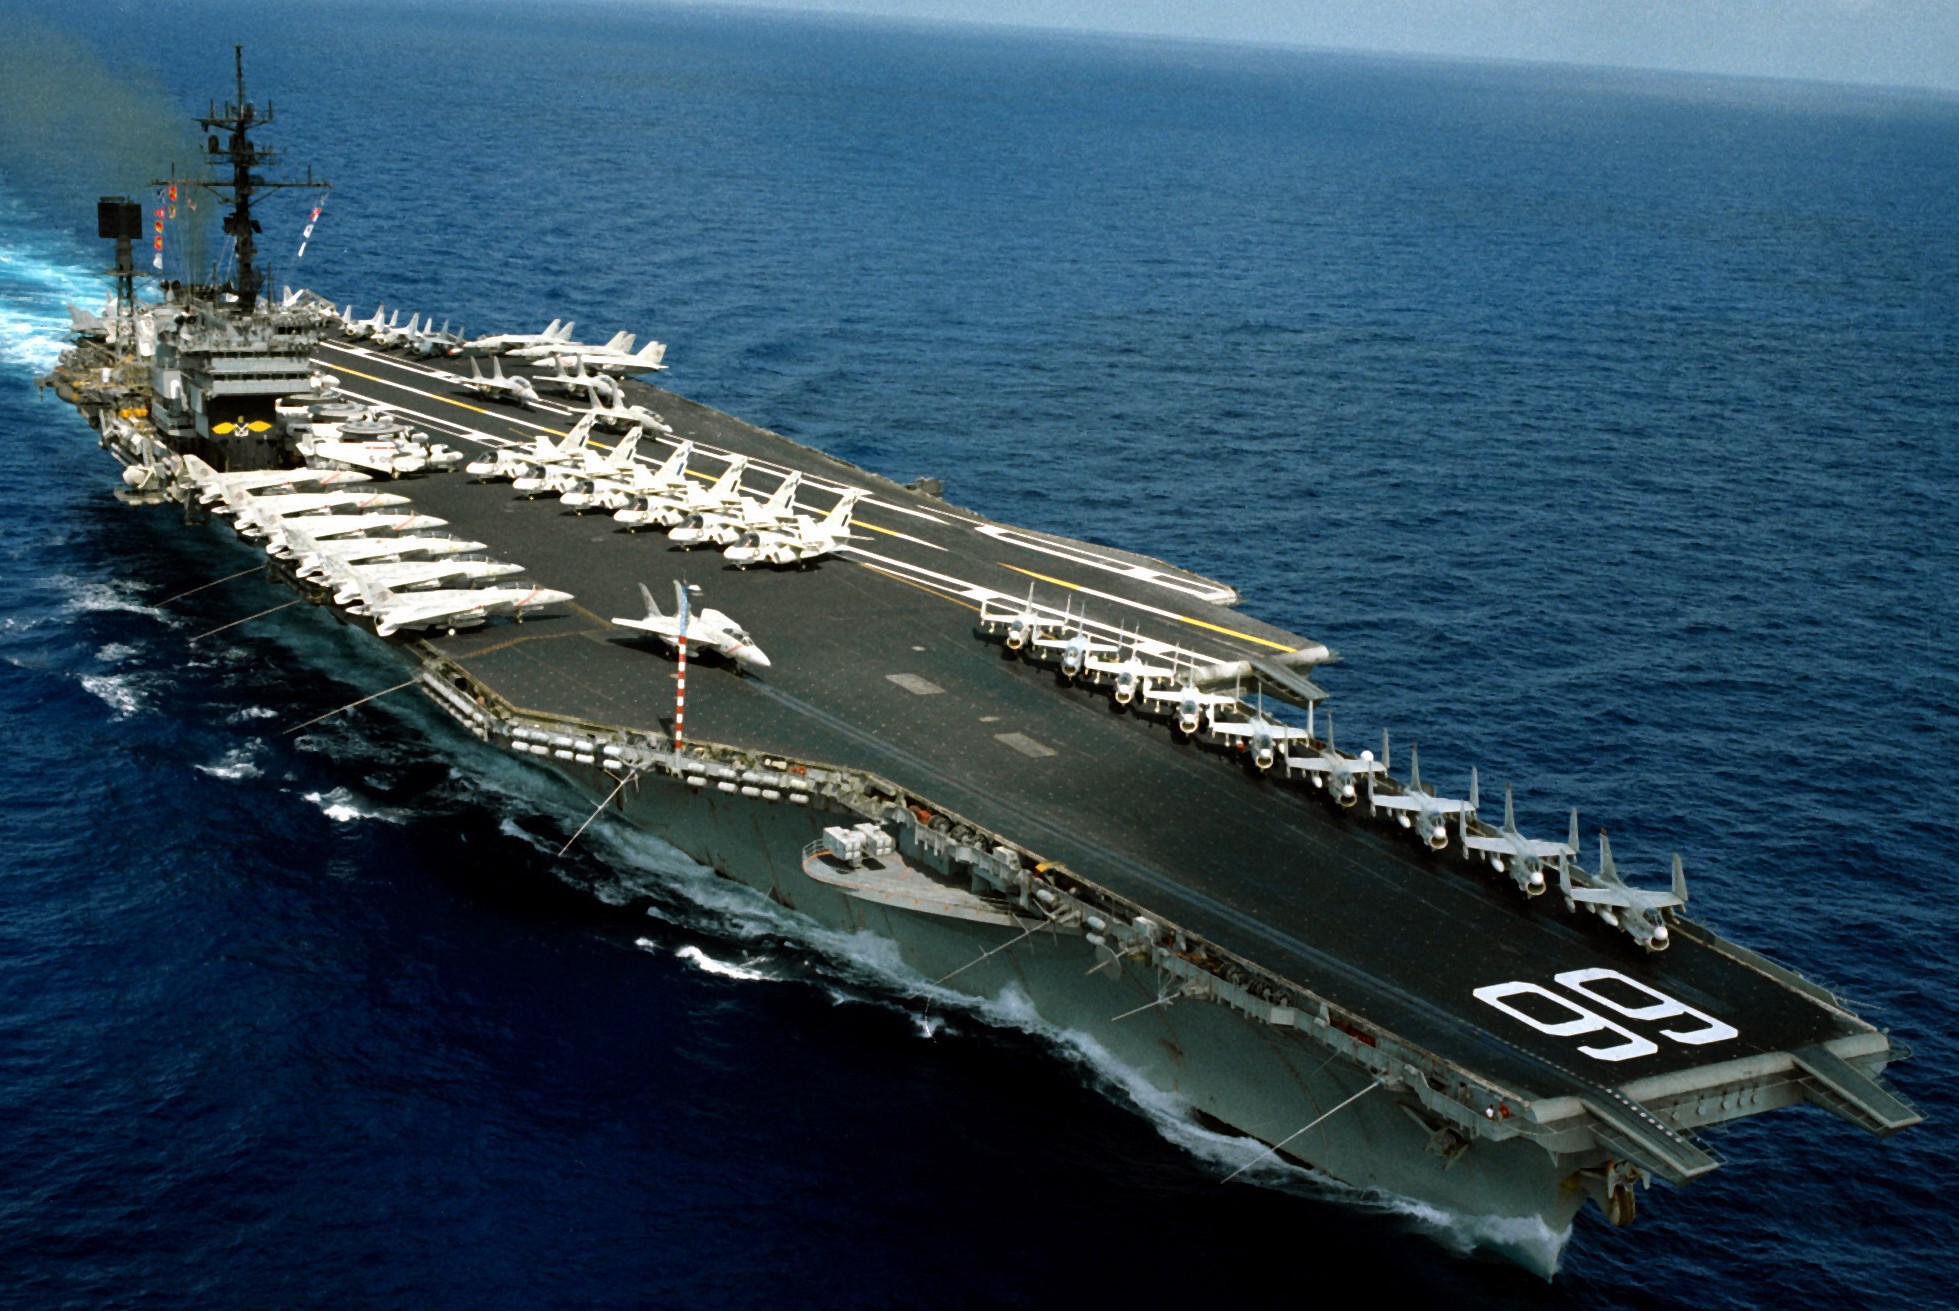 cv-66 uss america kitty hawk class aircraft carrier air wing cvw-1 us navy 53